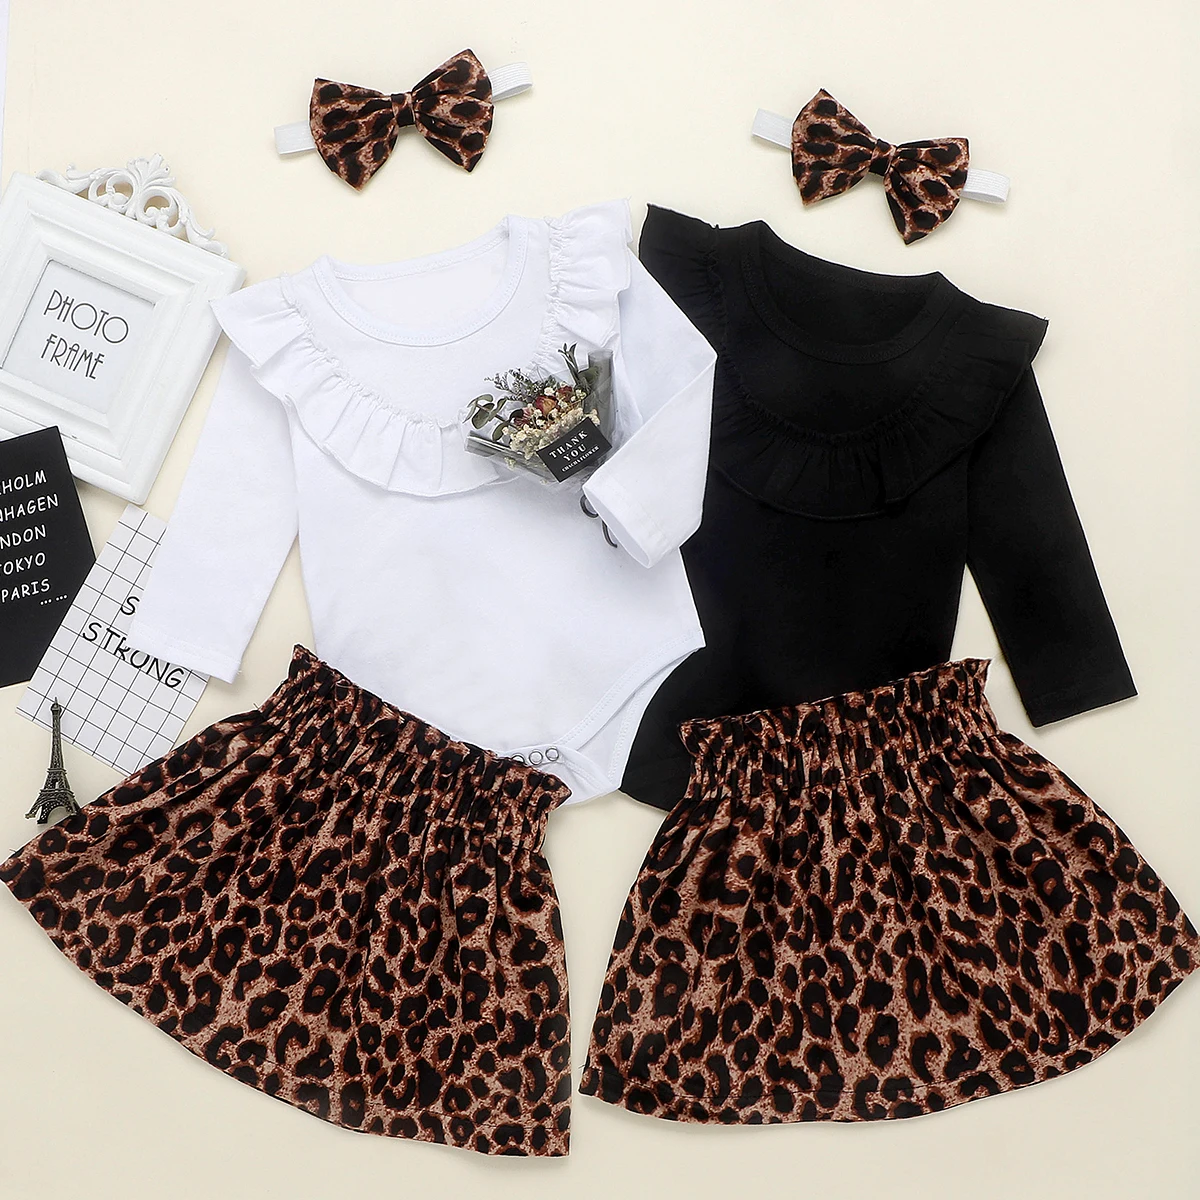 Г. Весенне-осенняя одежда для малышей Одежда для новорожденных девочек комбинезон с длинными рукавами, топы+ леопардовая юбка+ повязка на голову, хлопковая одежда